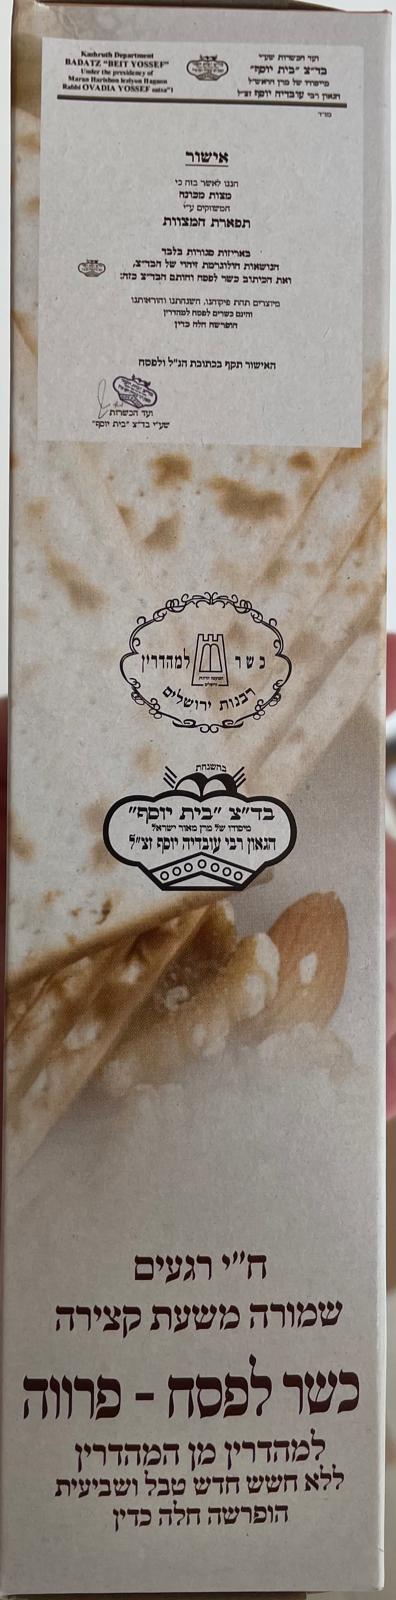 שלהבת לייט - קמח מצה - כשר לפסח - תפארת המצות - בית יוסף